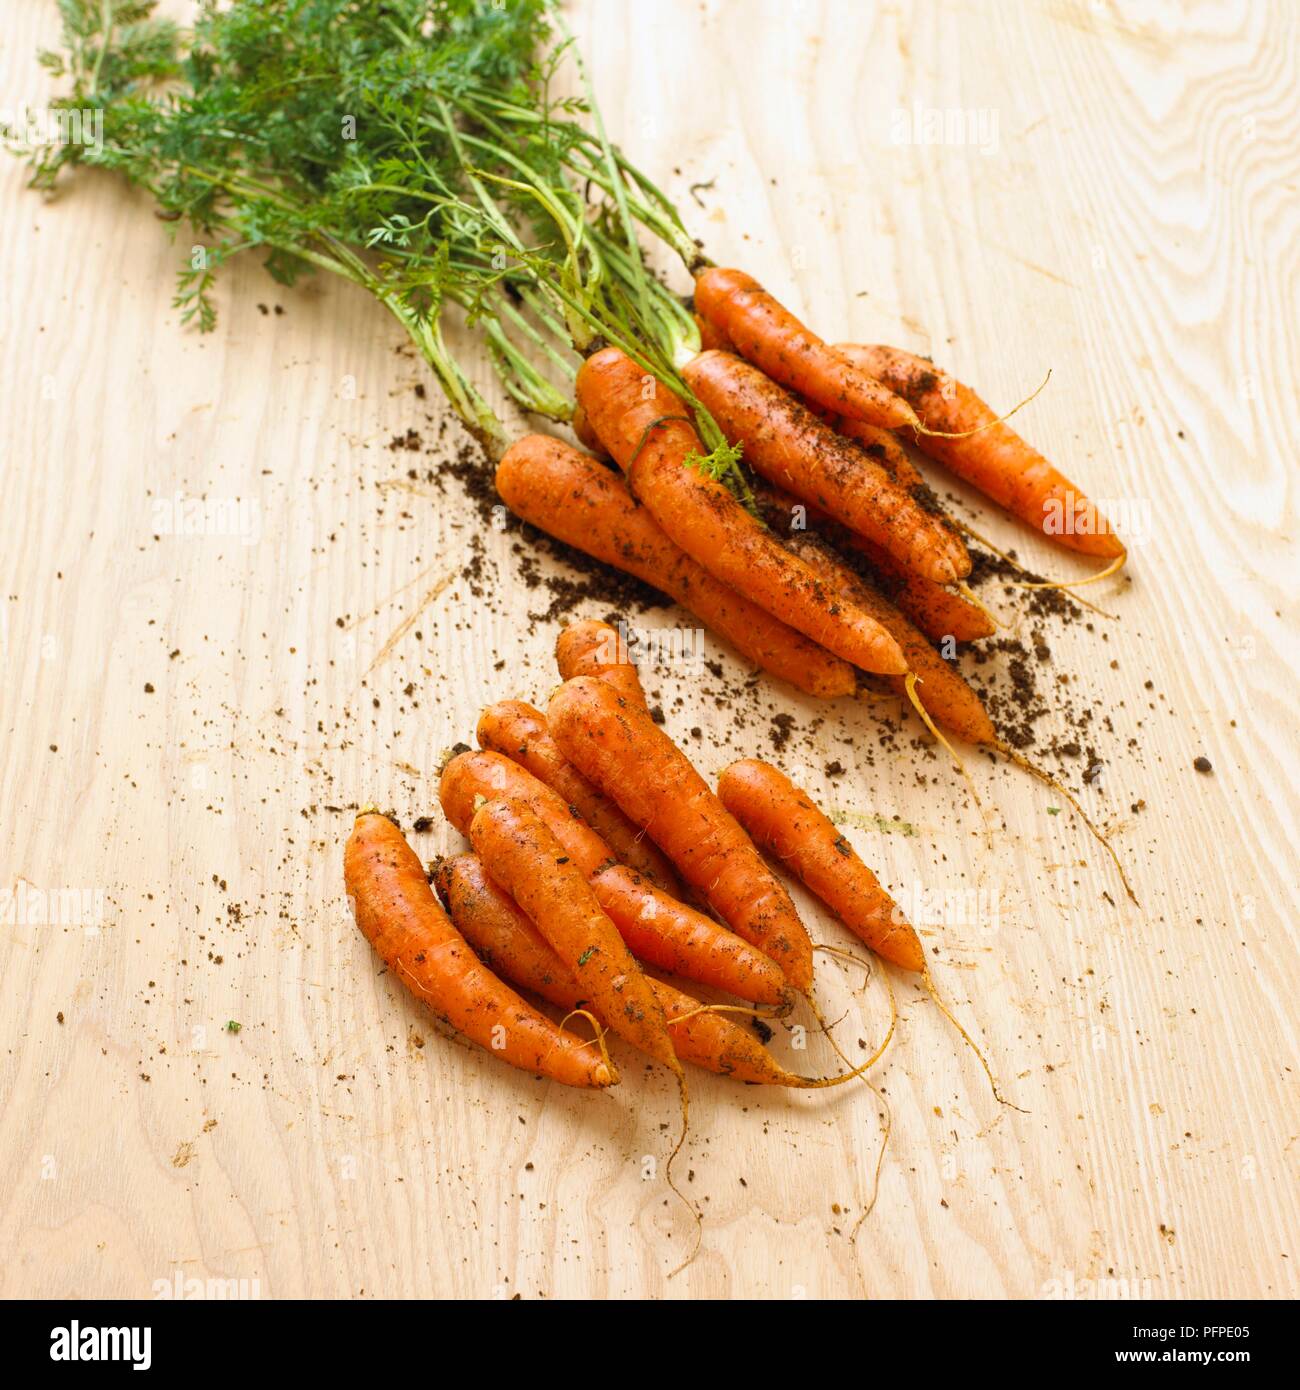 Le carote con fango su una superficie di legno, close-up Foto Stock